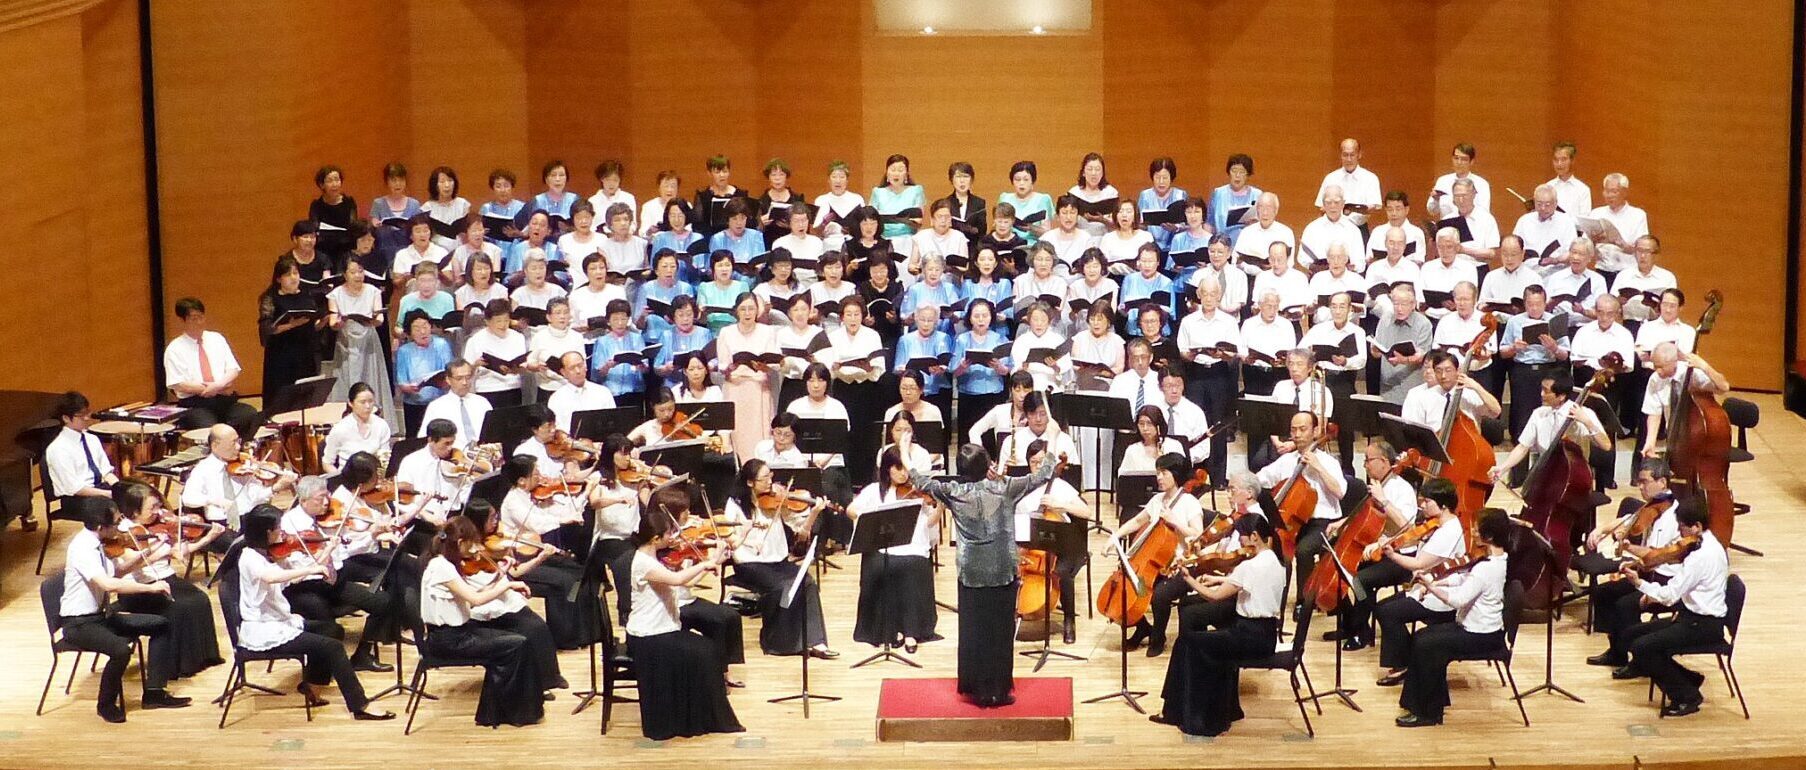 鎌倉男声合唱団 牧神 15周年記念 第6回定期演奏会